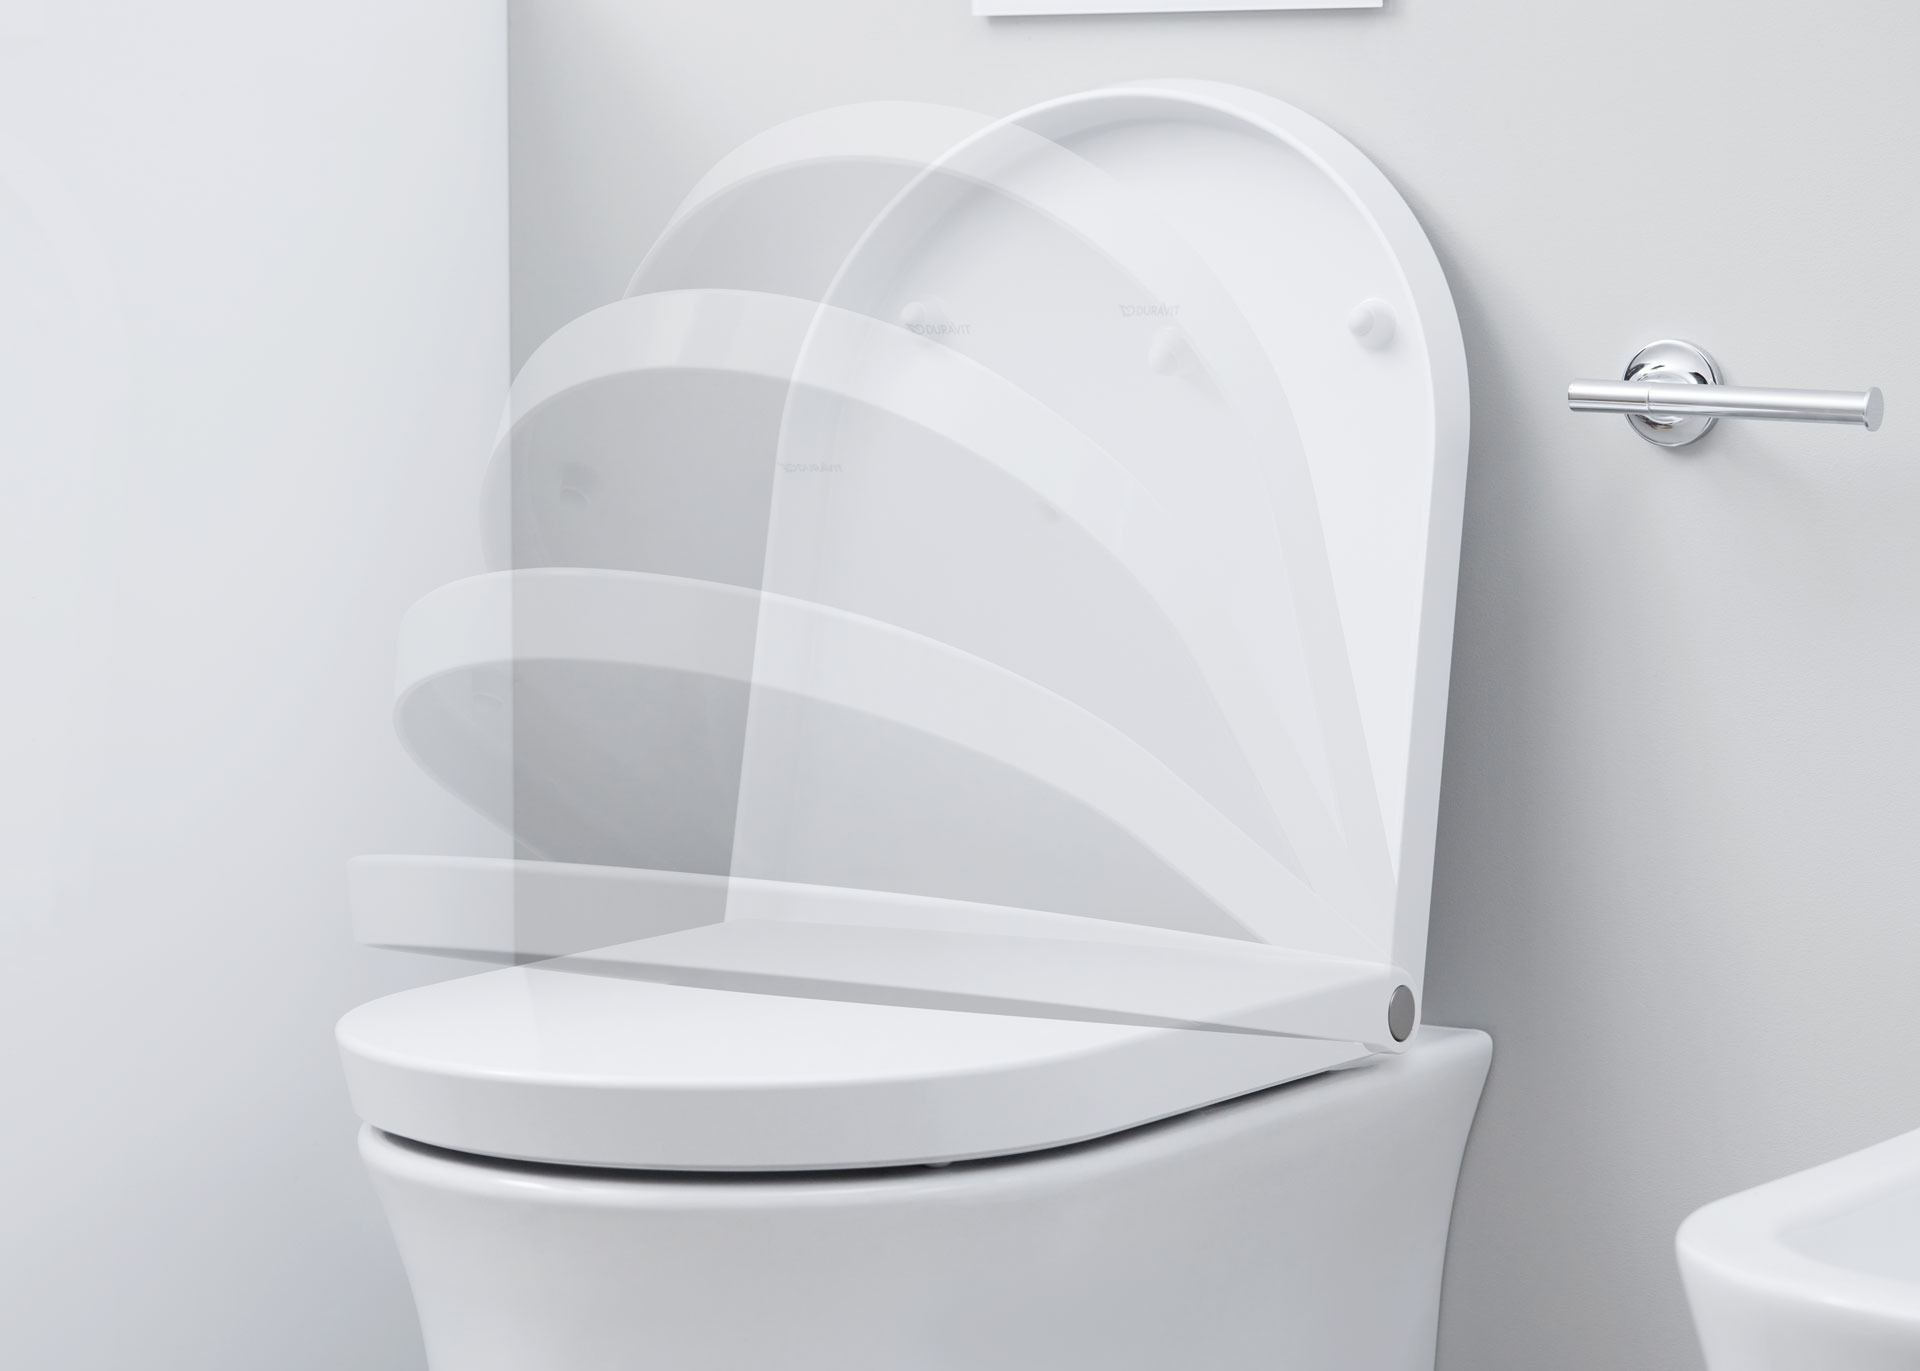 Absenkfunktion eines WhiteTulip WC-Sitzes